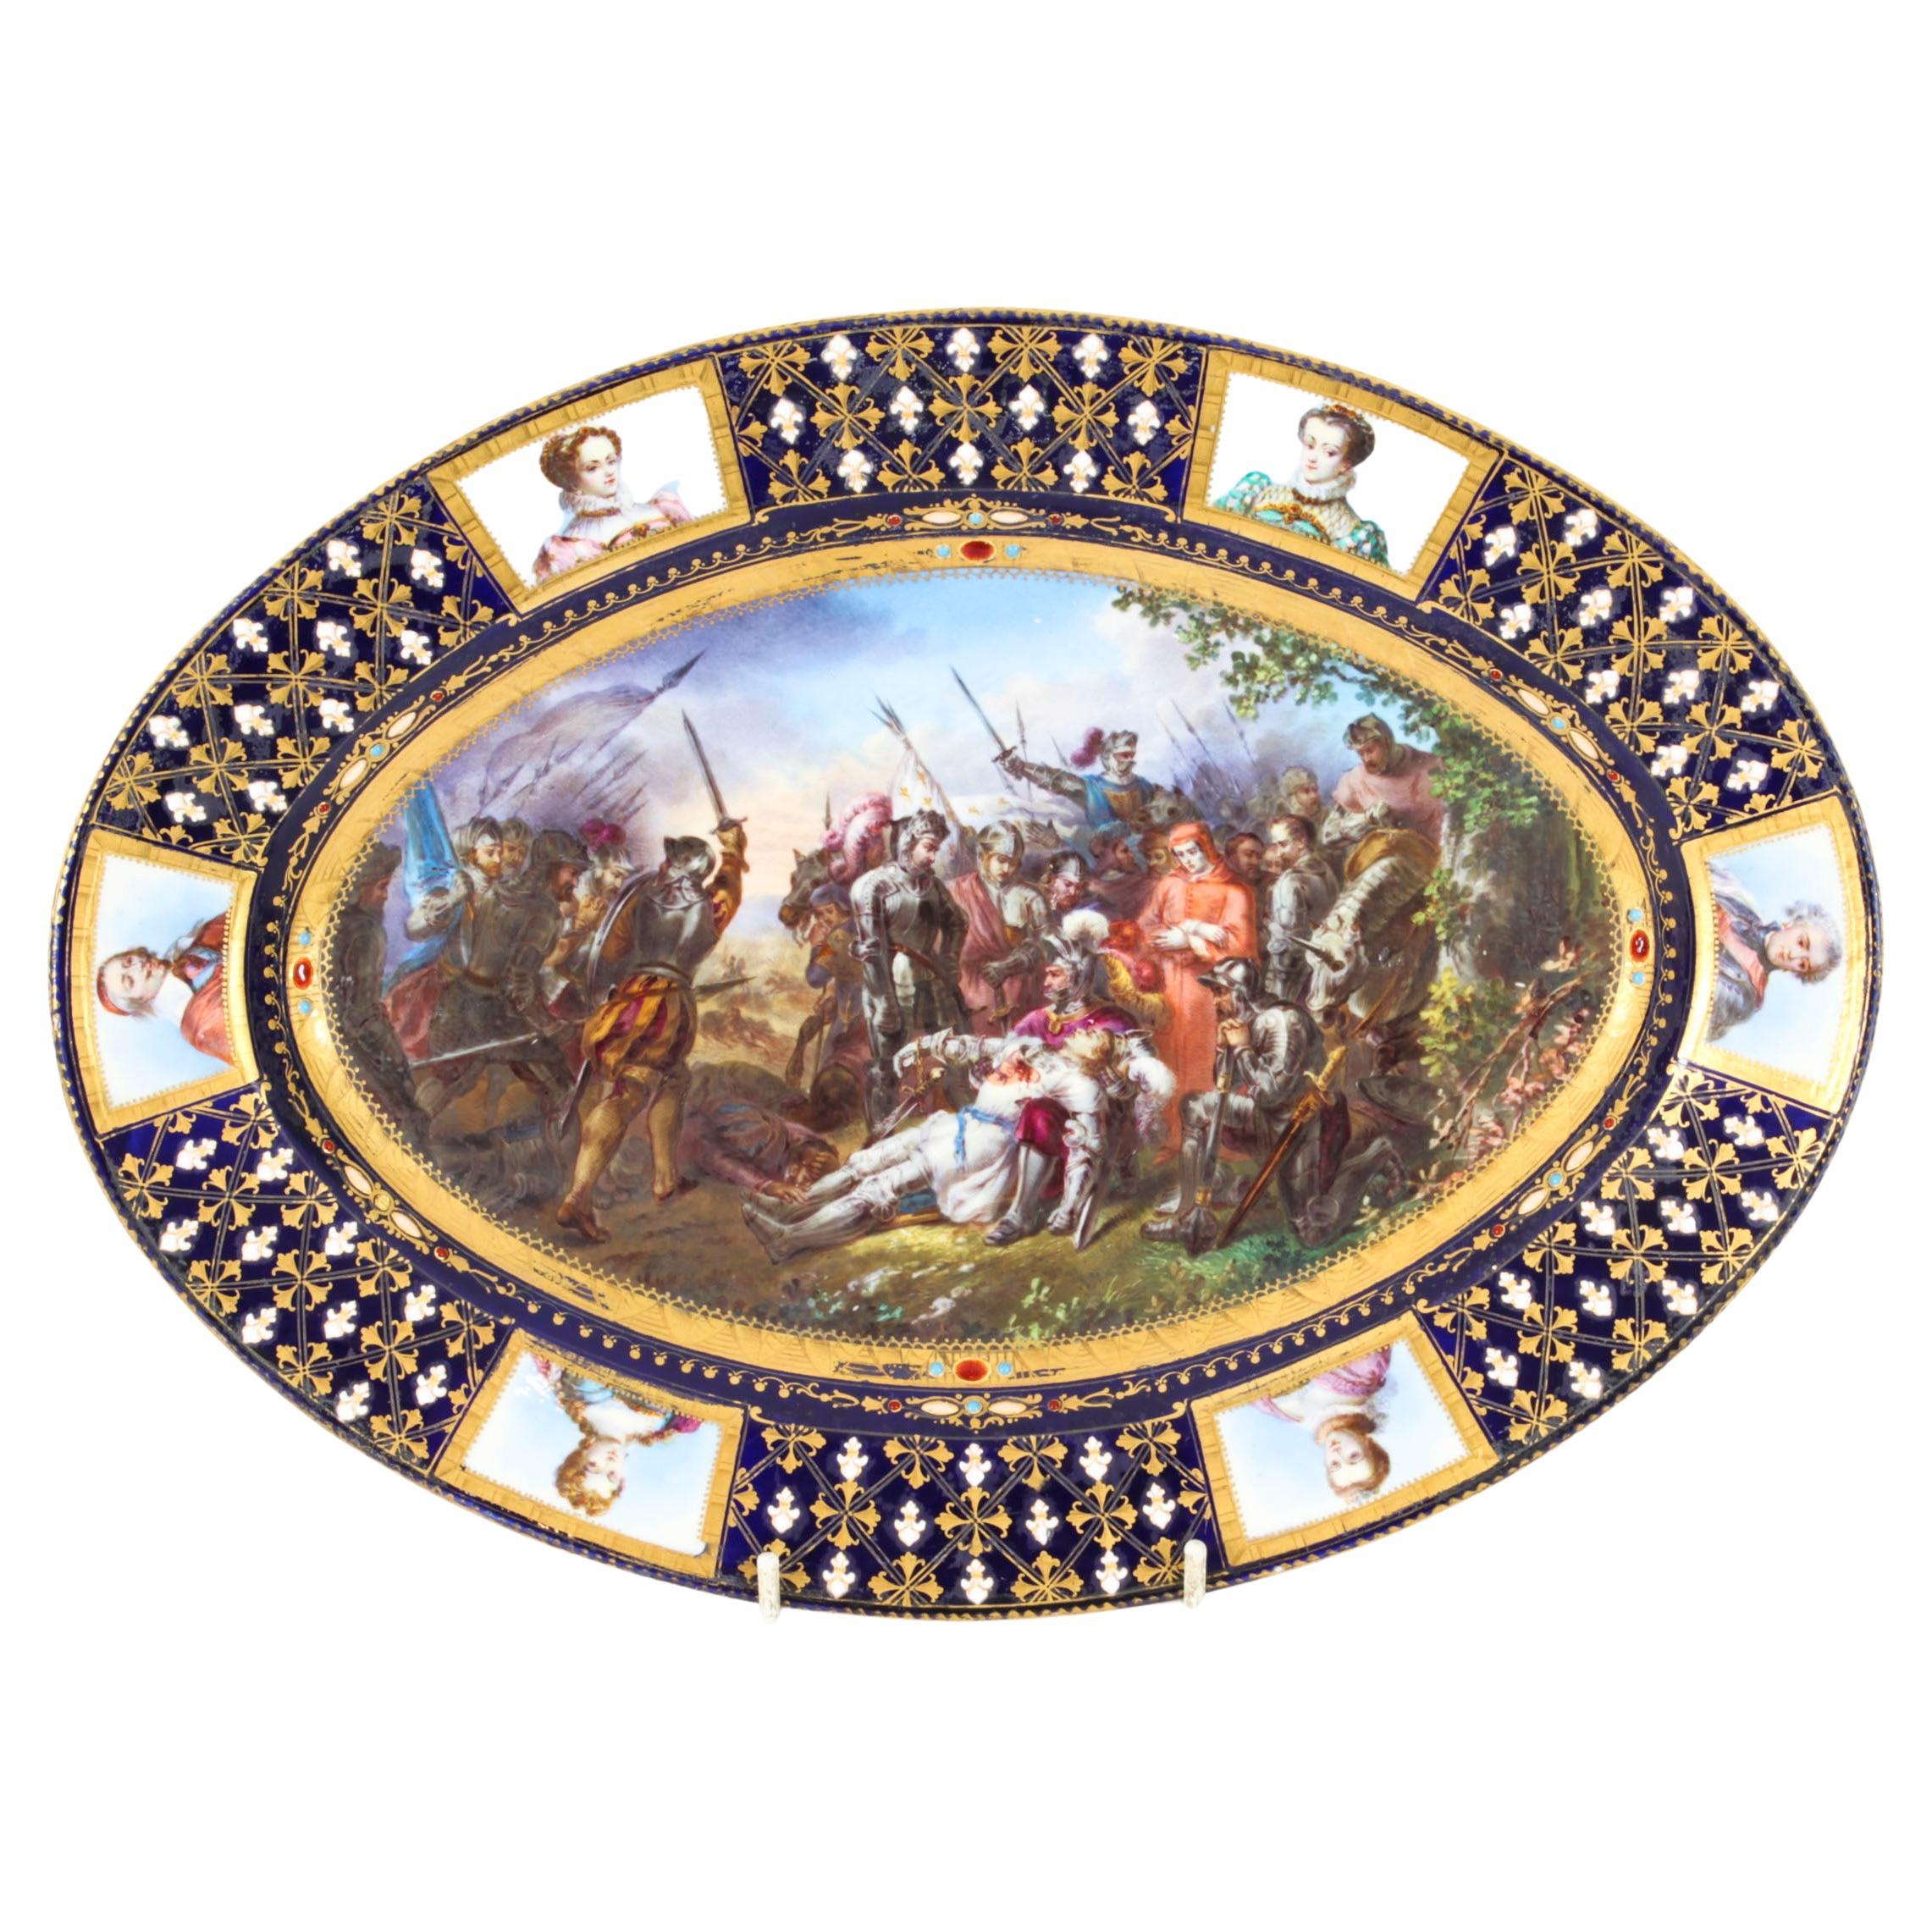 Ancien plat ovale en porcelaine de Sèvres fin 18ème siècle